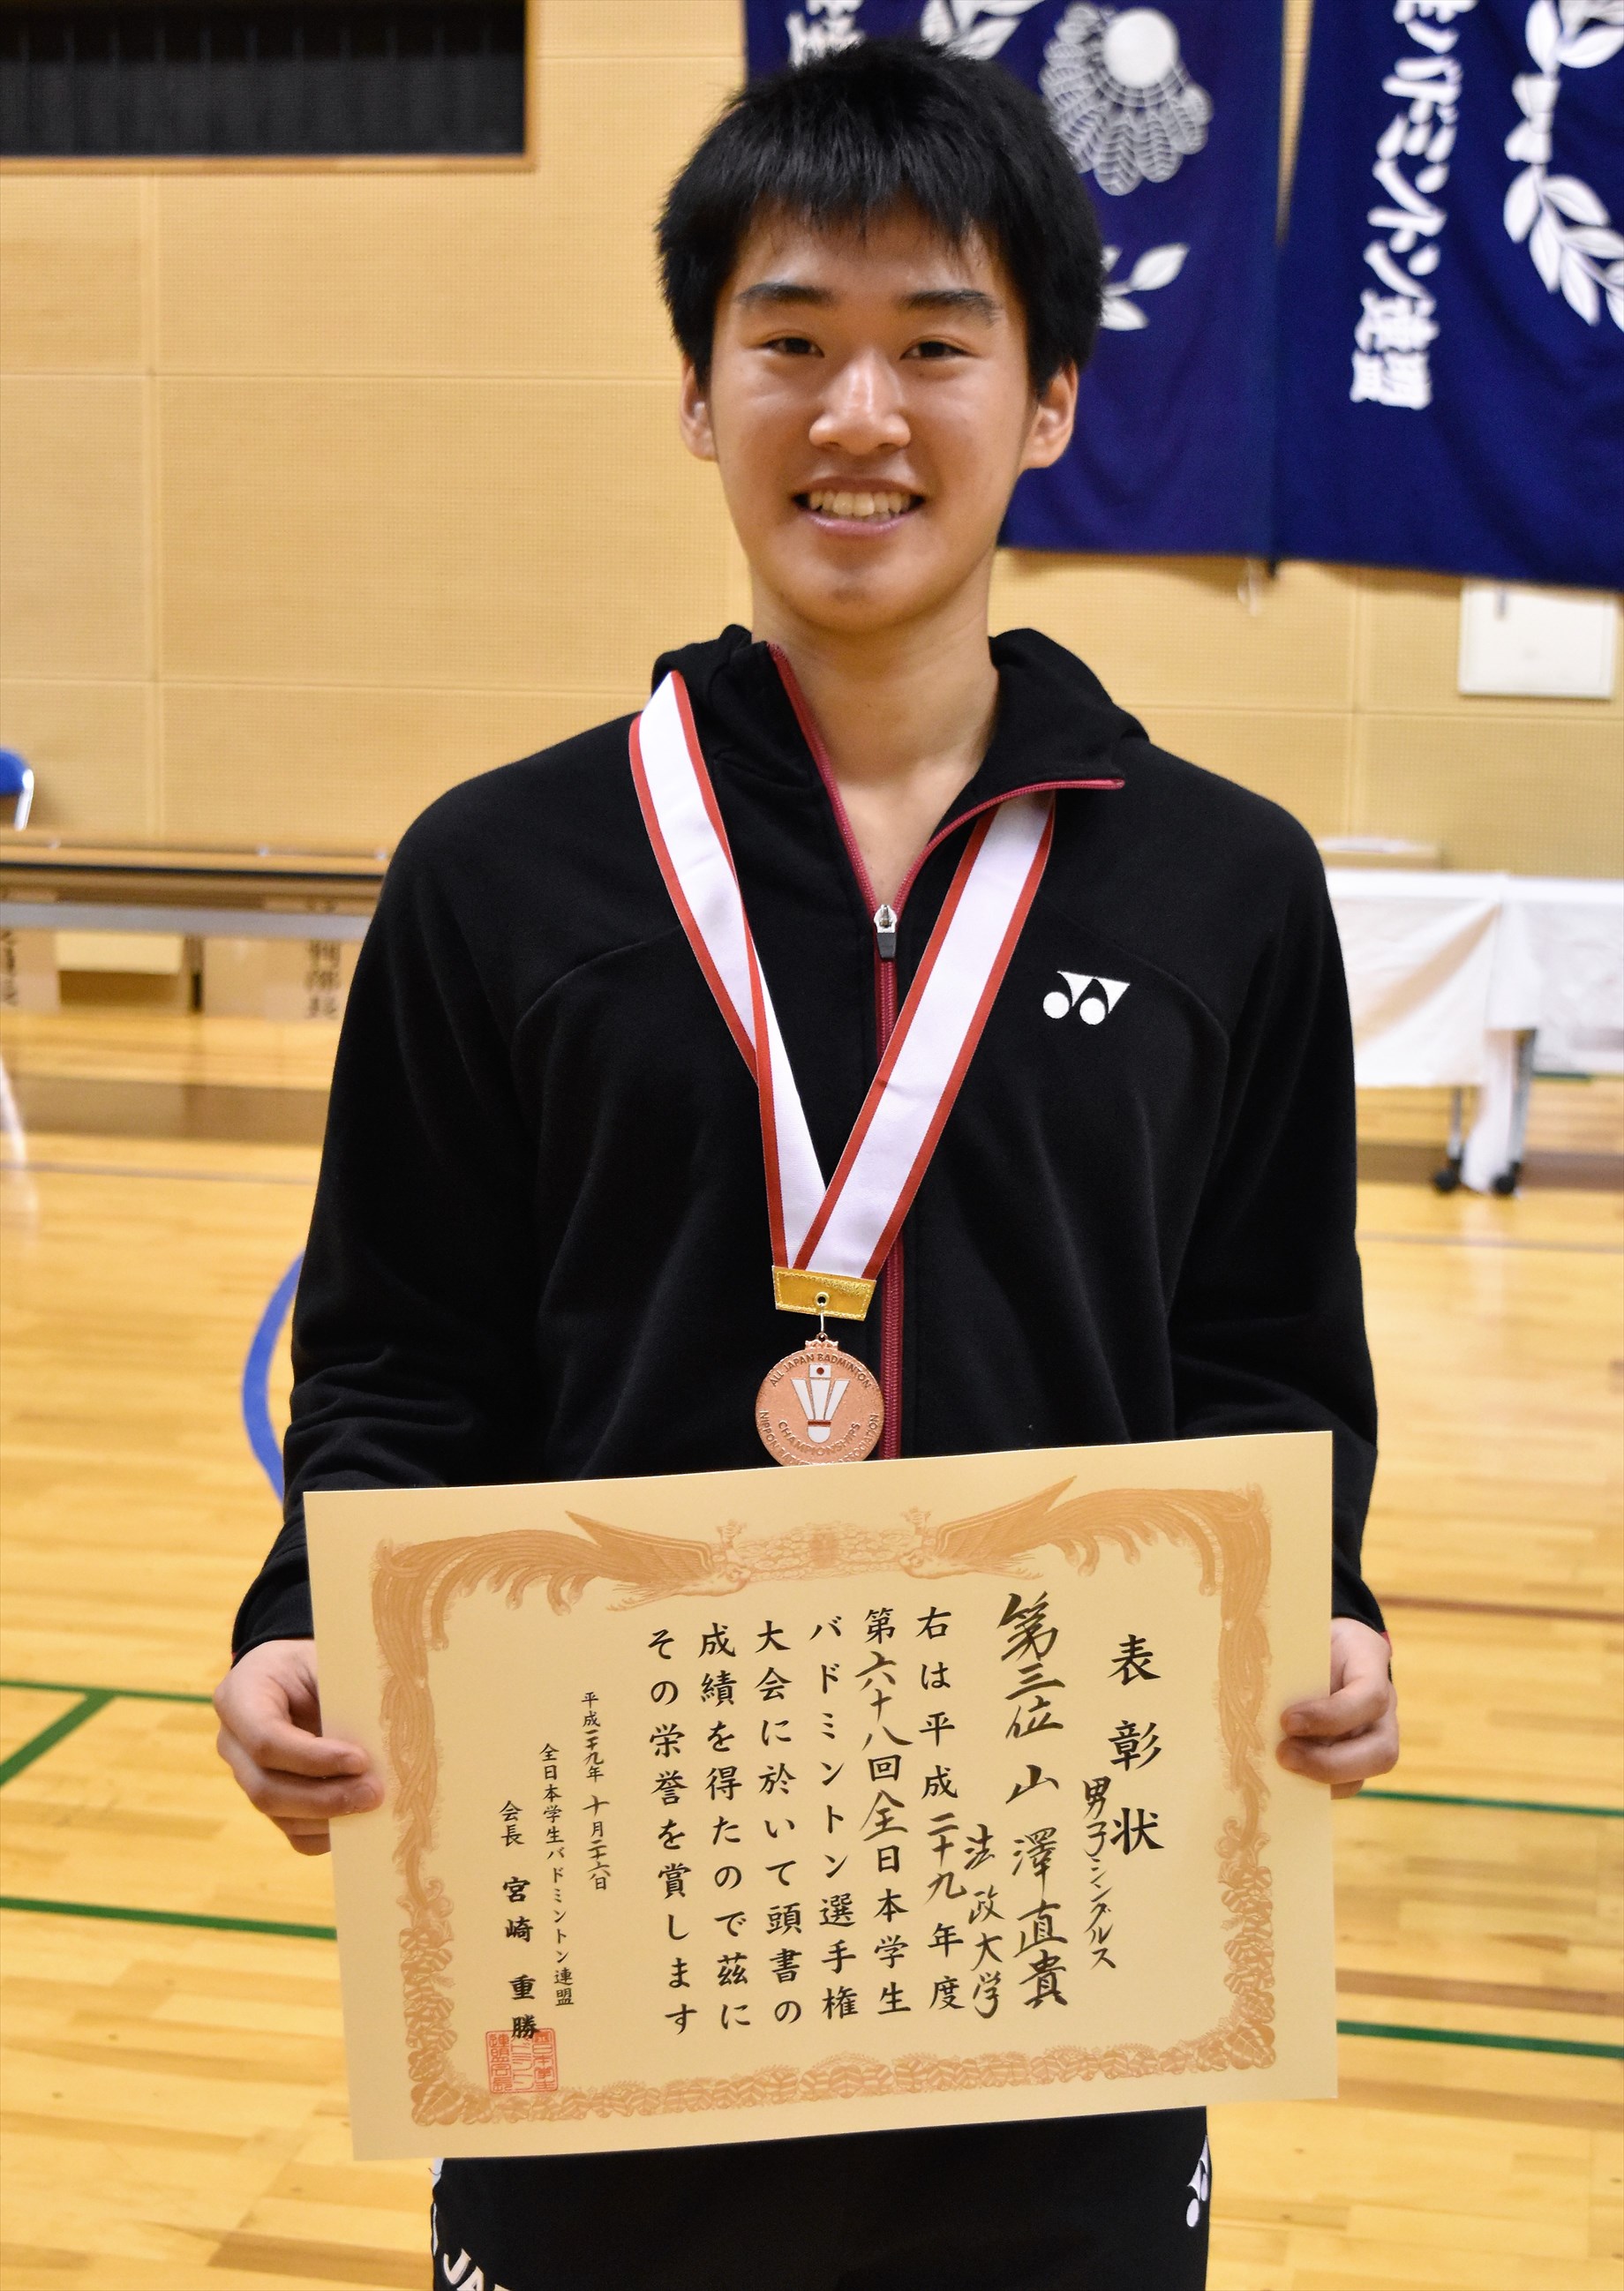 秩父宮妃杯争奪第68回全日本学生バドミントン選手権大会シングルス・ダブルスの結果